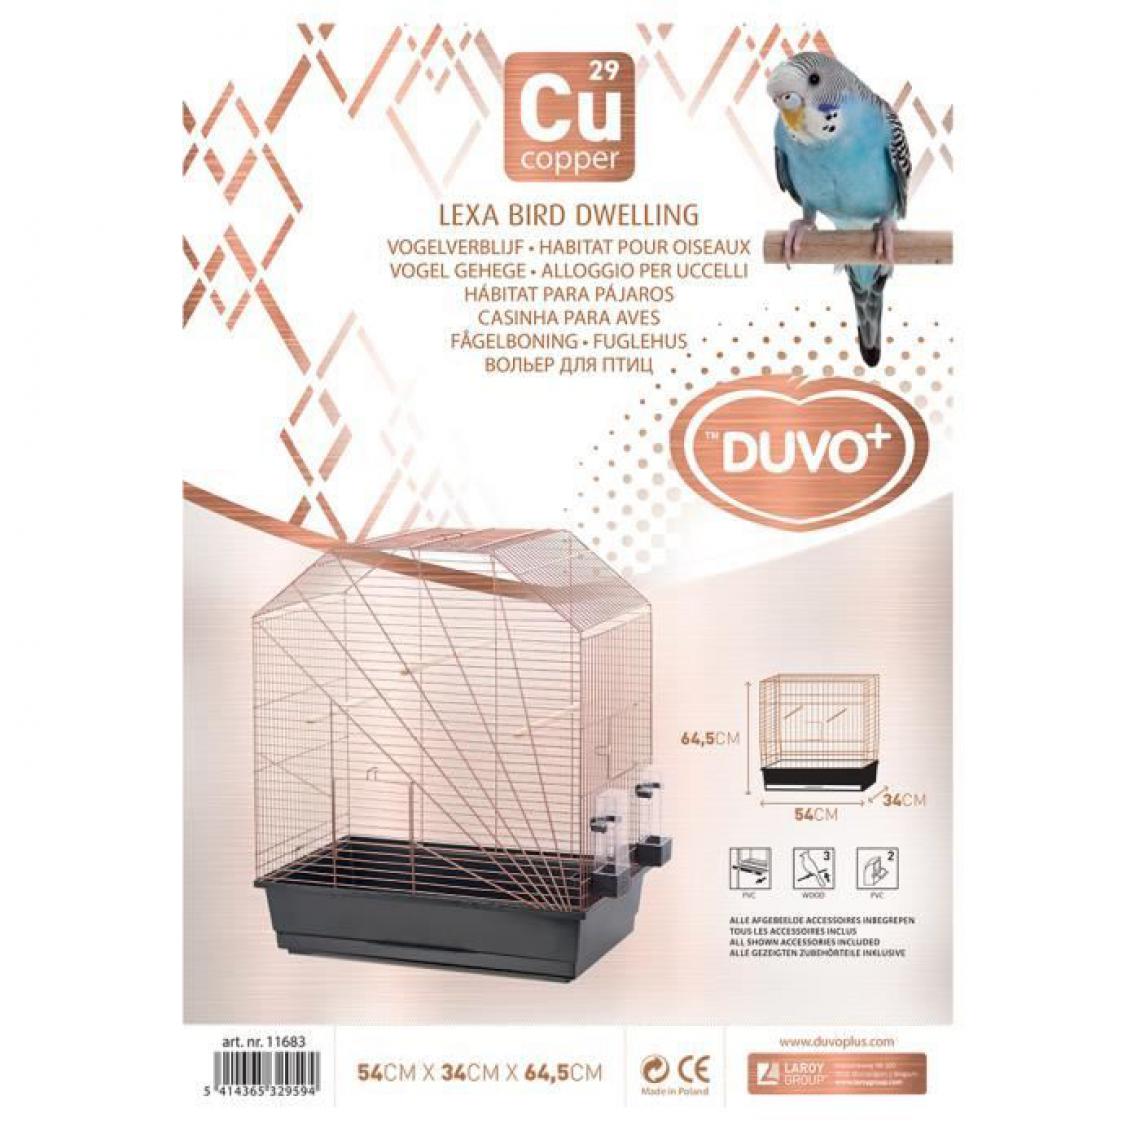 Duvo - DUVO+ Cage Copper Lexa 54 x 34 x 64,5 cm - 3,5 kg - Noir et cuivre - Pour oiseaux - Cage pour rongeur